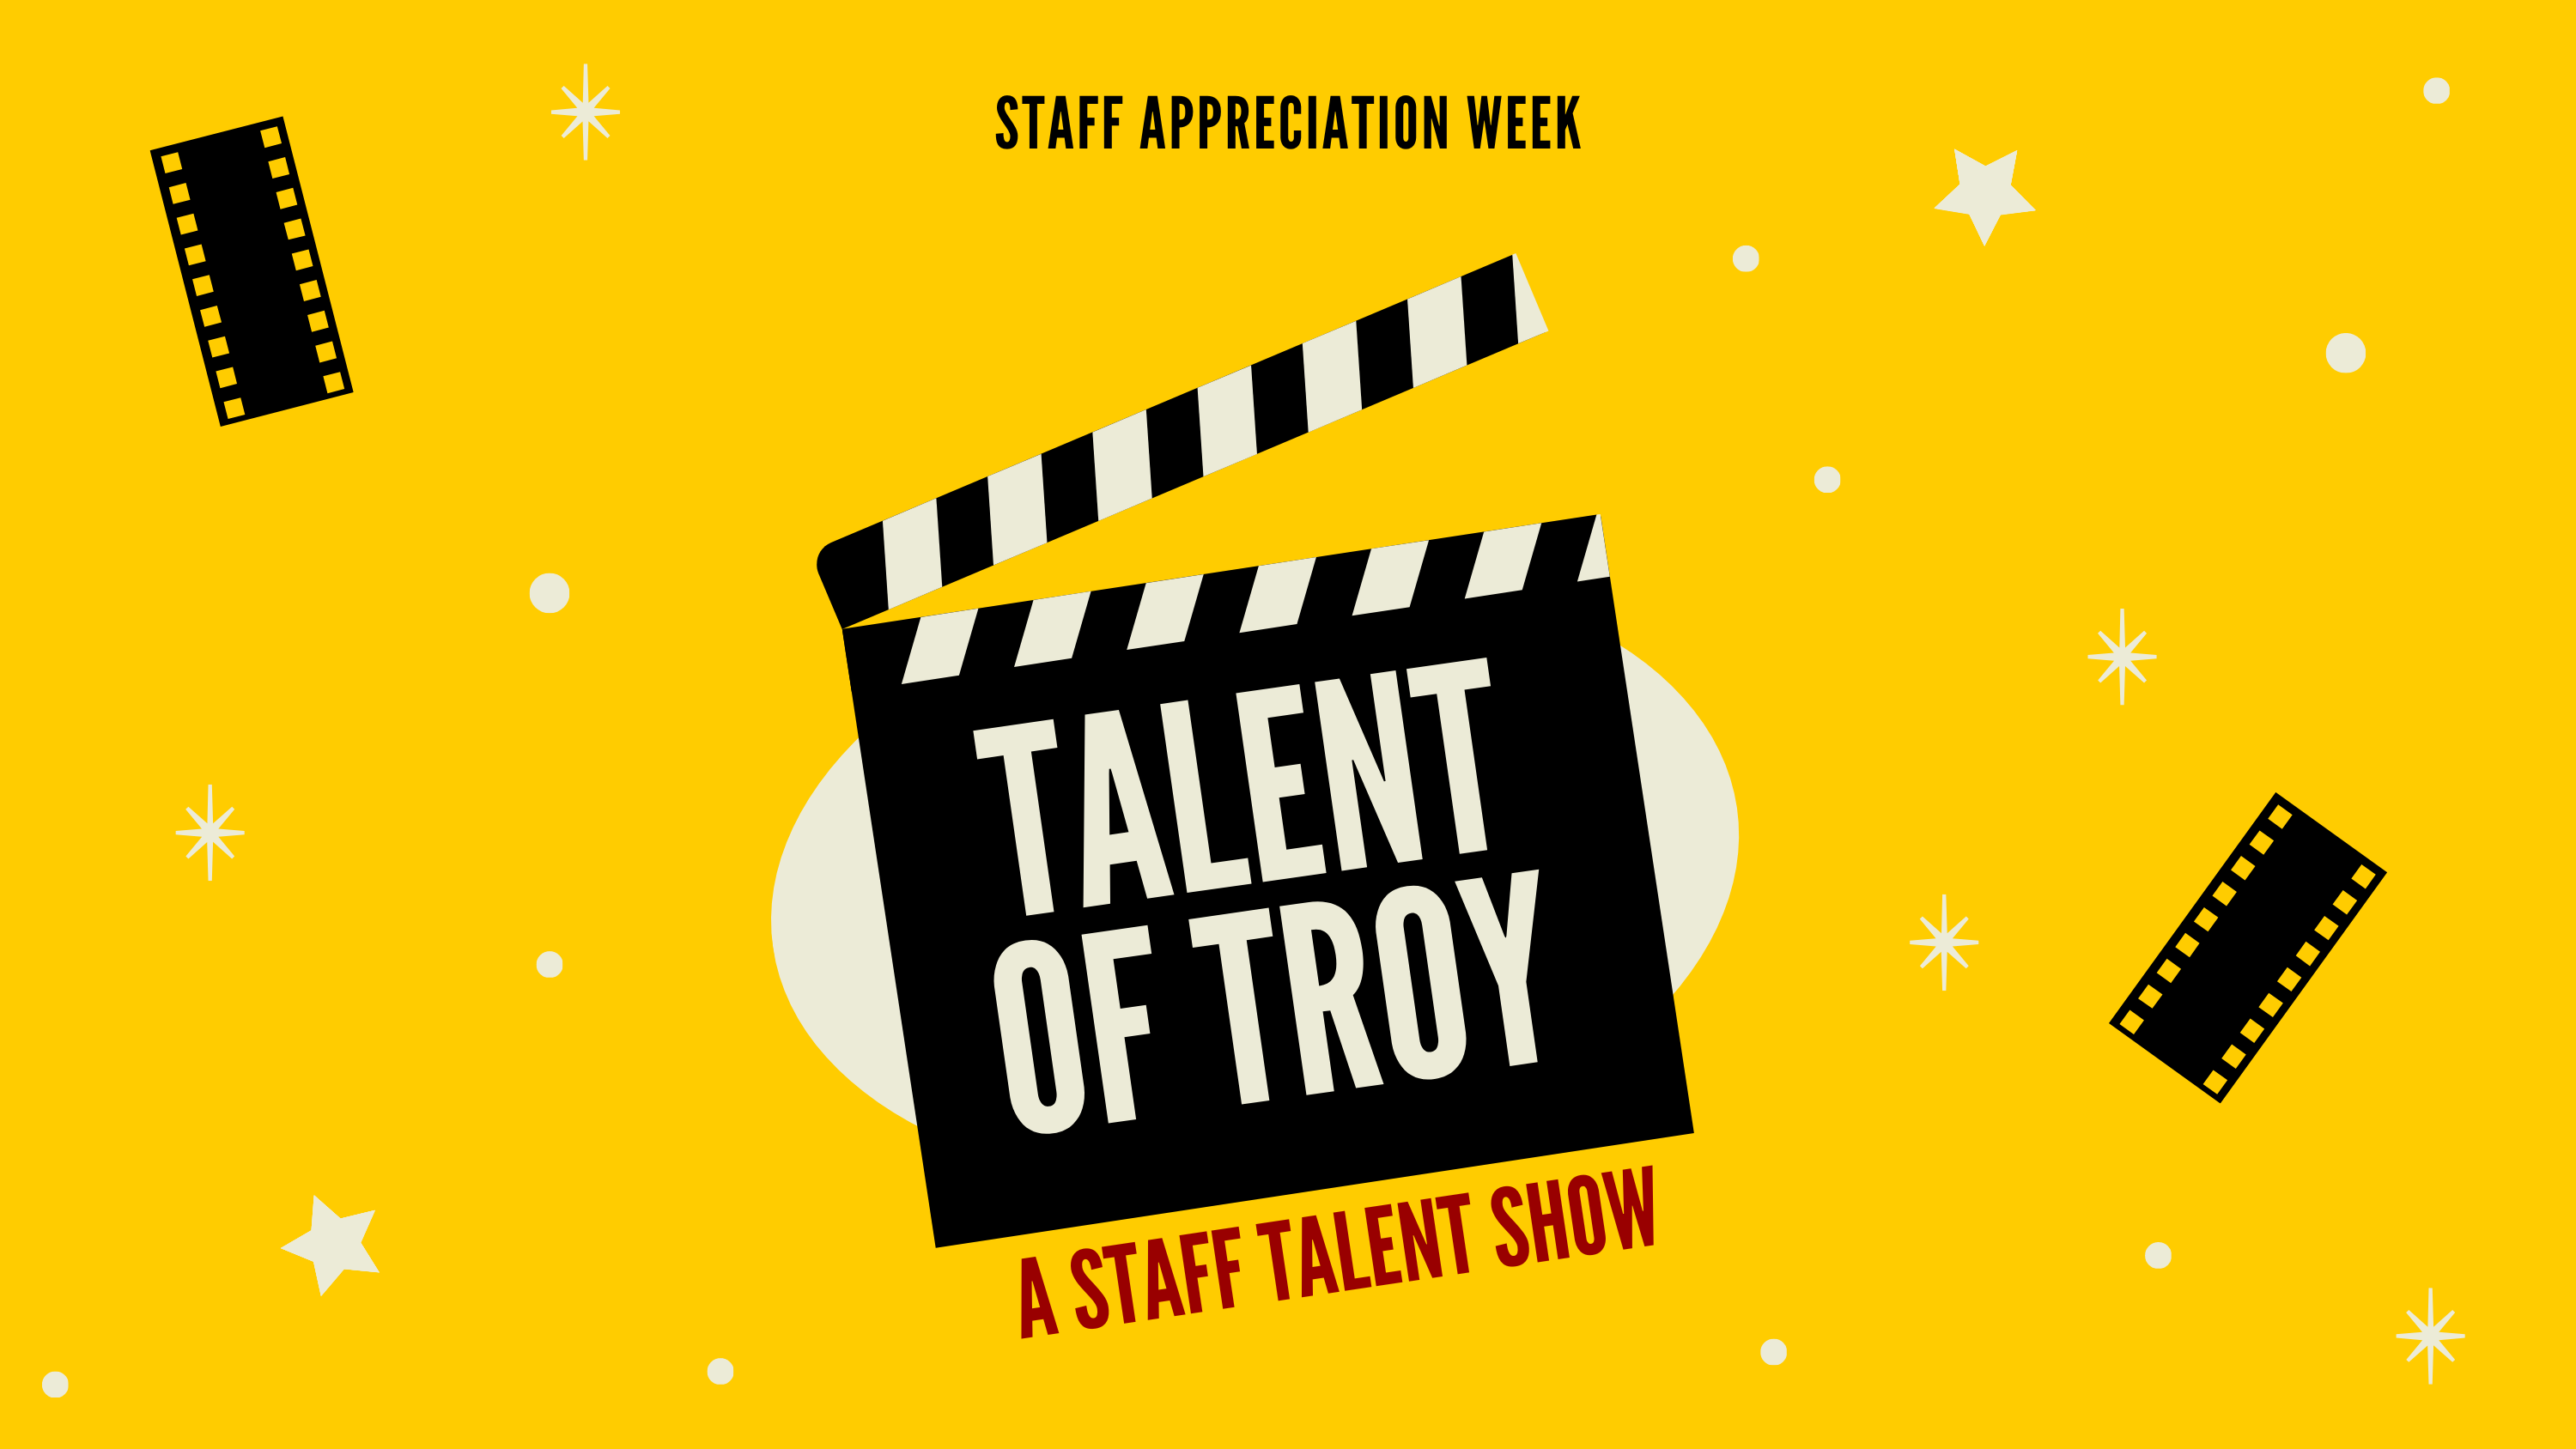 Talent of Troy staff talent show